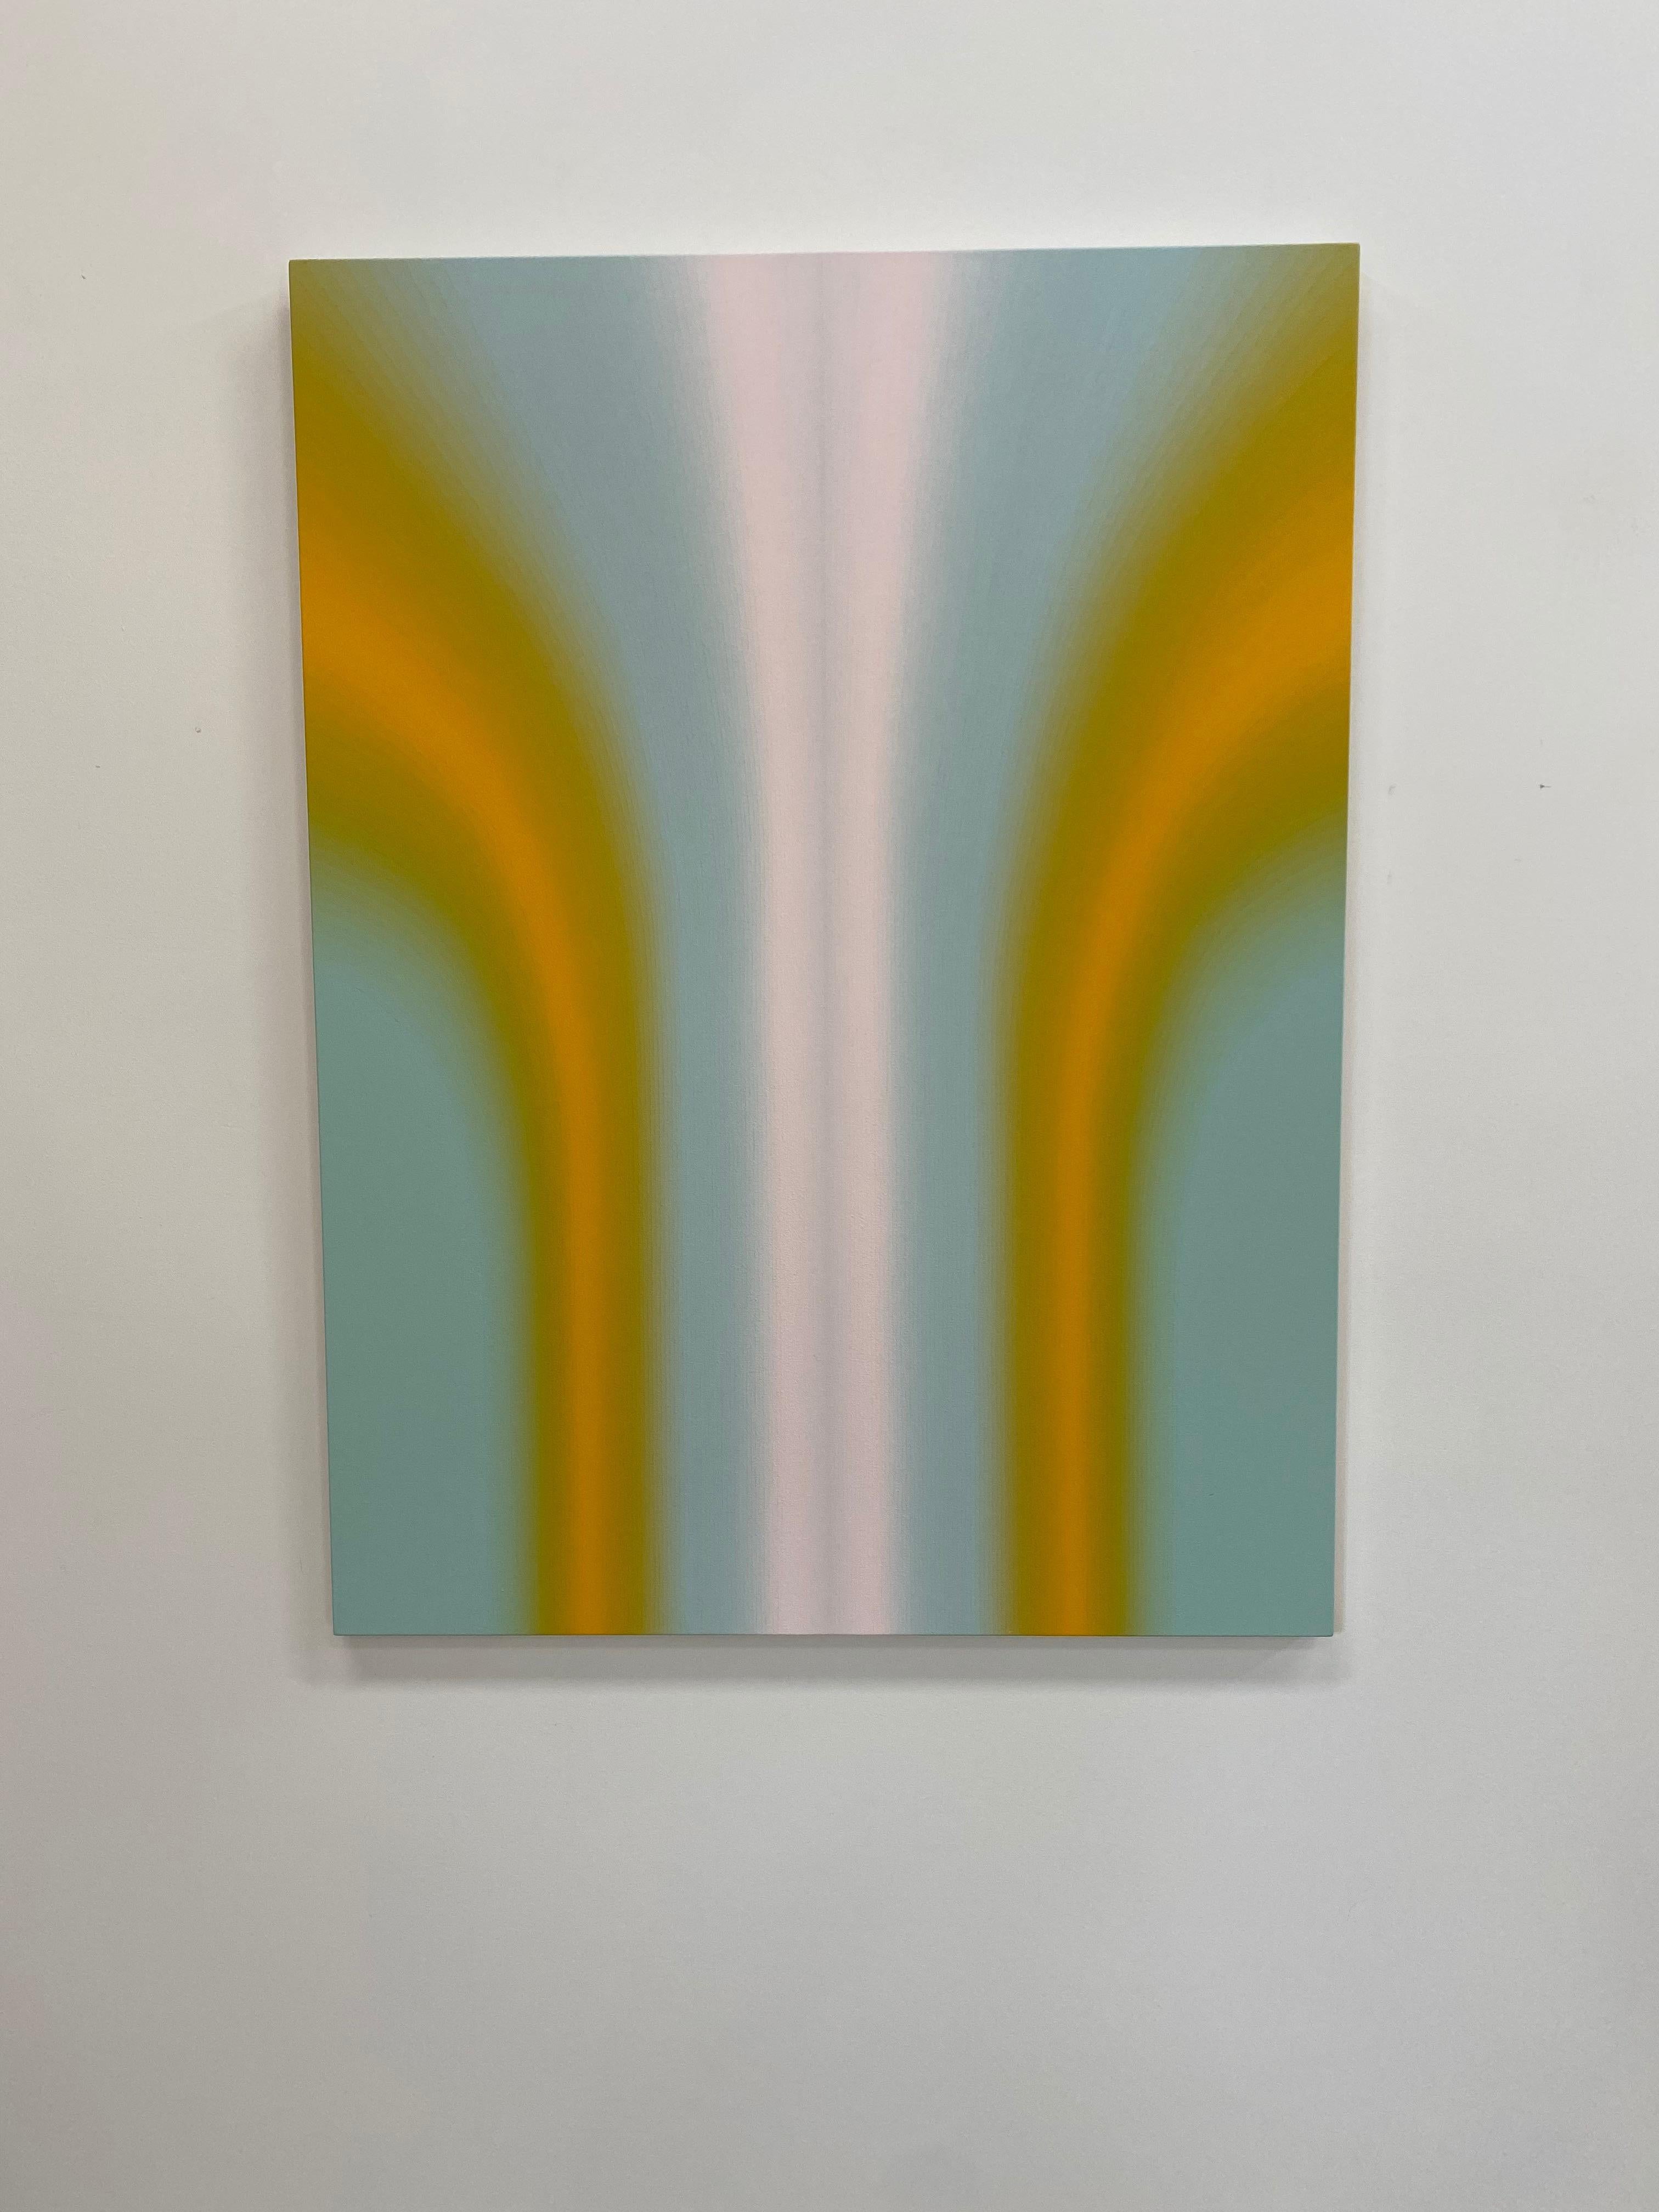 Sechs Shadow Valley Sechs, Hellgelgel Orange, Mintblau, Weiß Gradient Curving Shape (Zeitgenössisch), Painting, von Audrey Stone